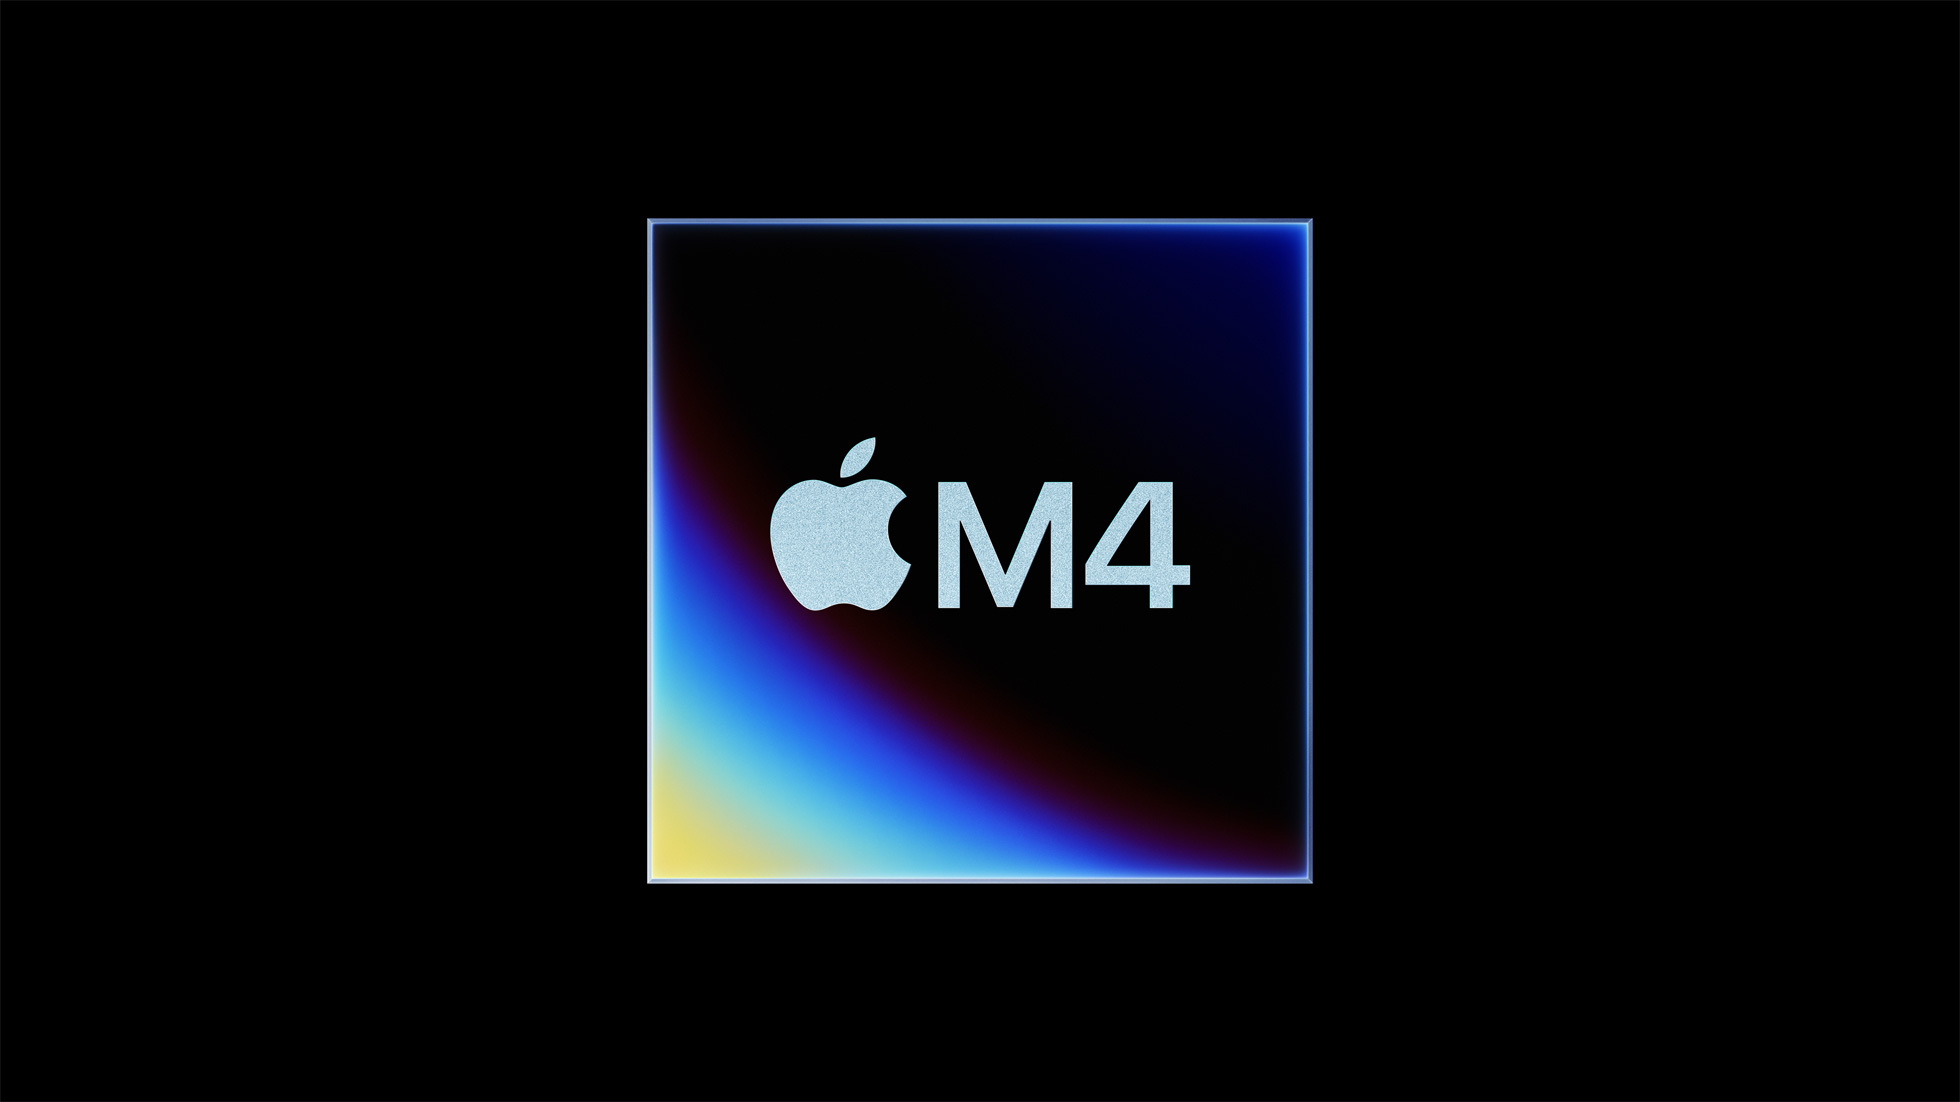 Apple revela chip M4 com foco em IA